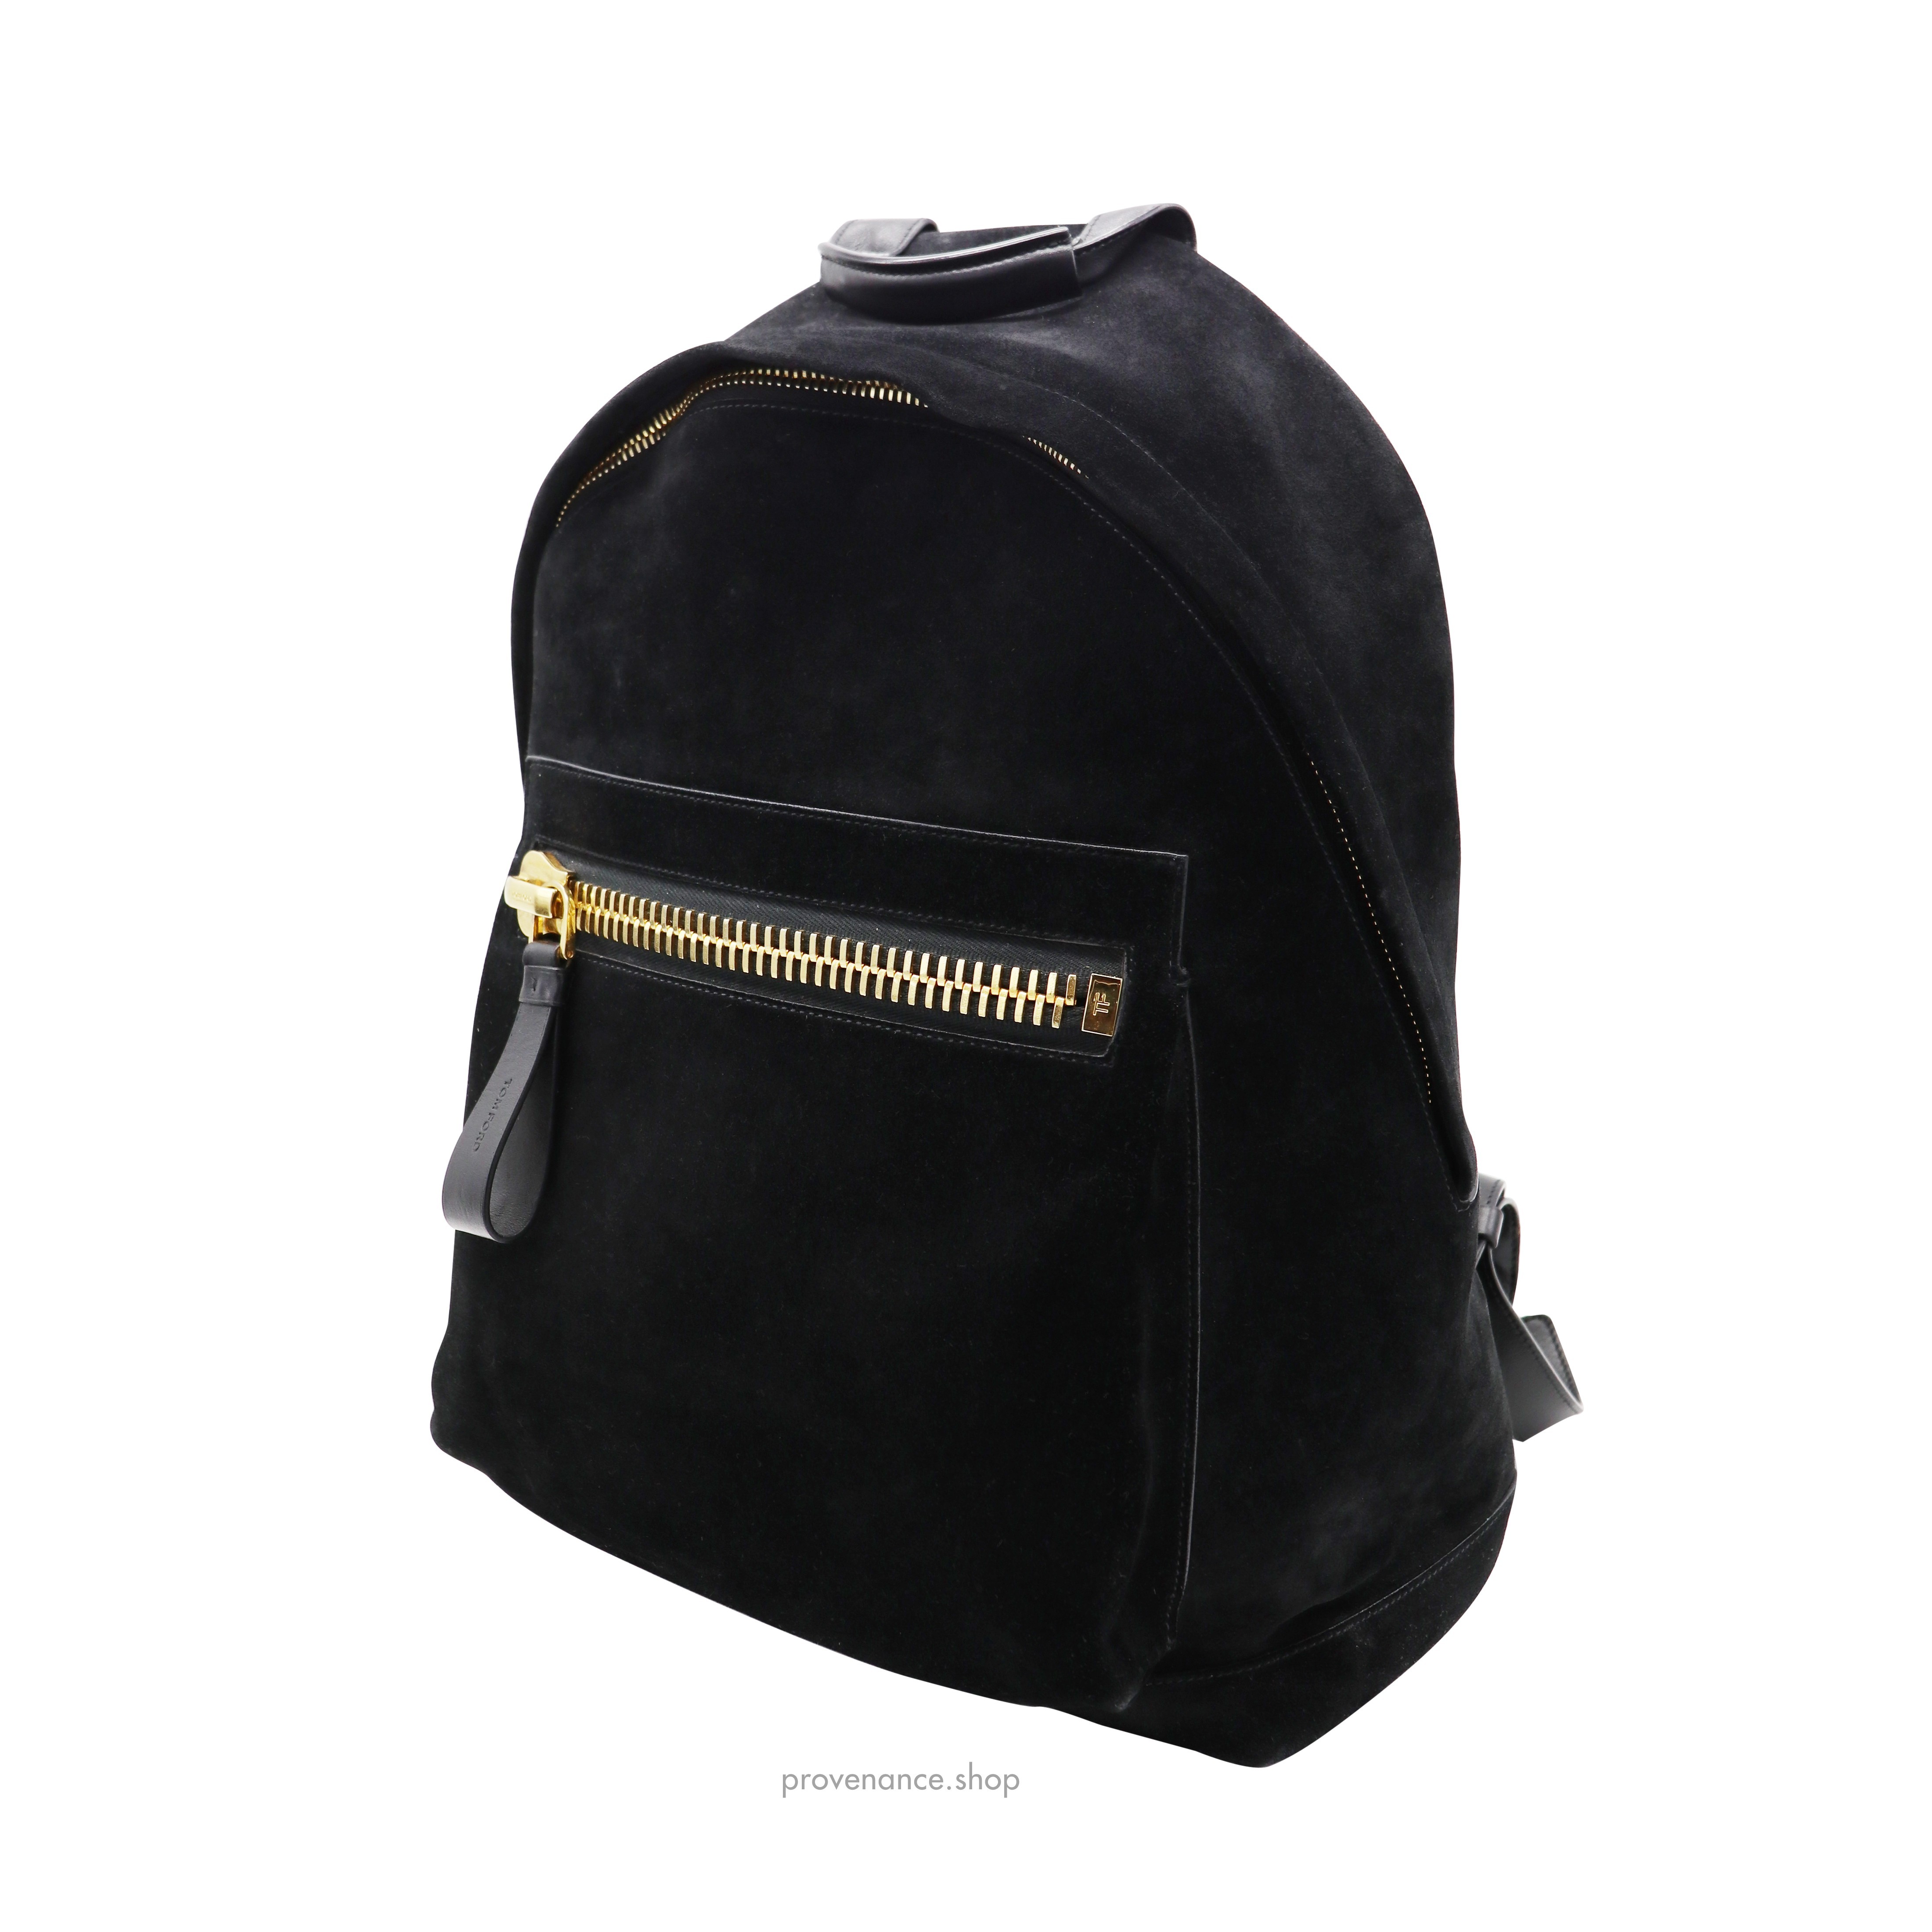 Buckley Backpack Bag - Black Suede - 7